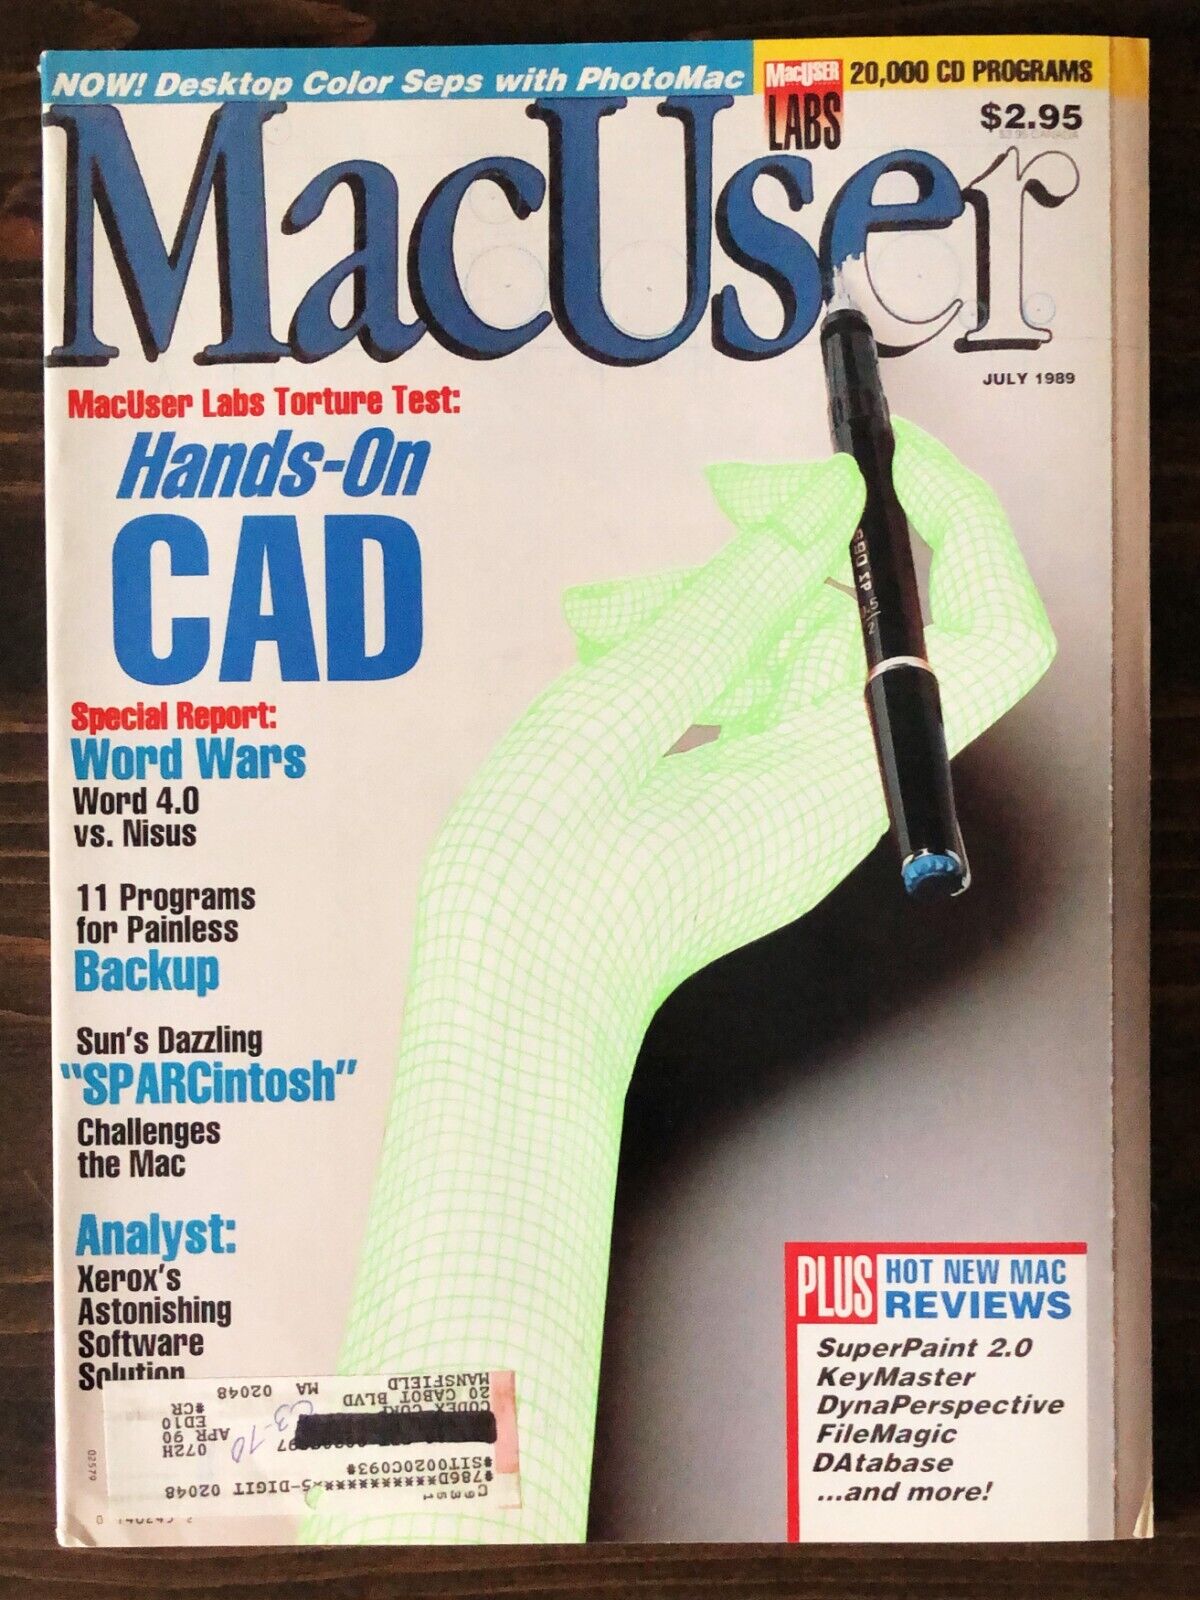 MacUser Magazine - July 1989, Vol. 5, No. 7